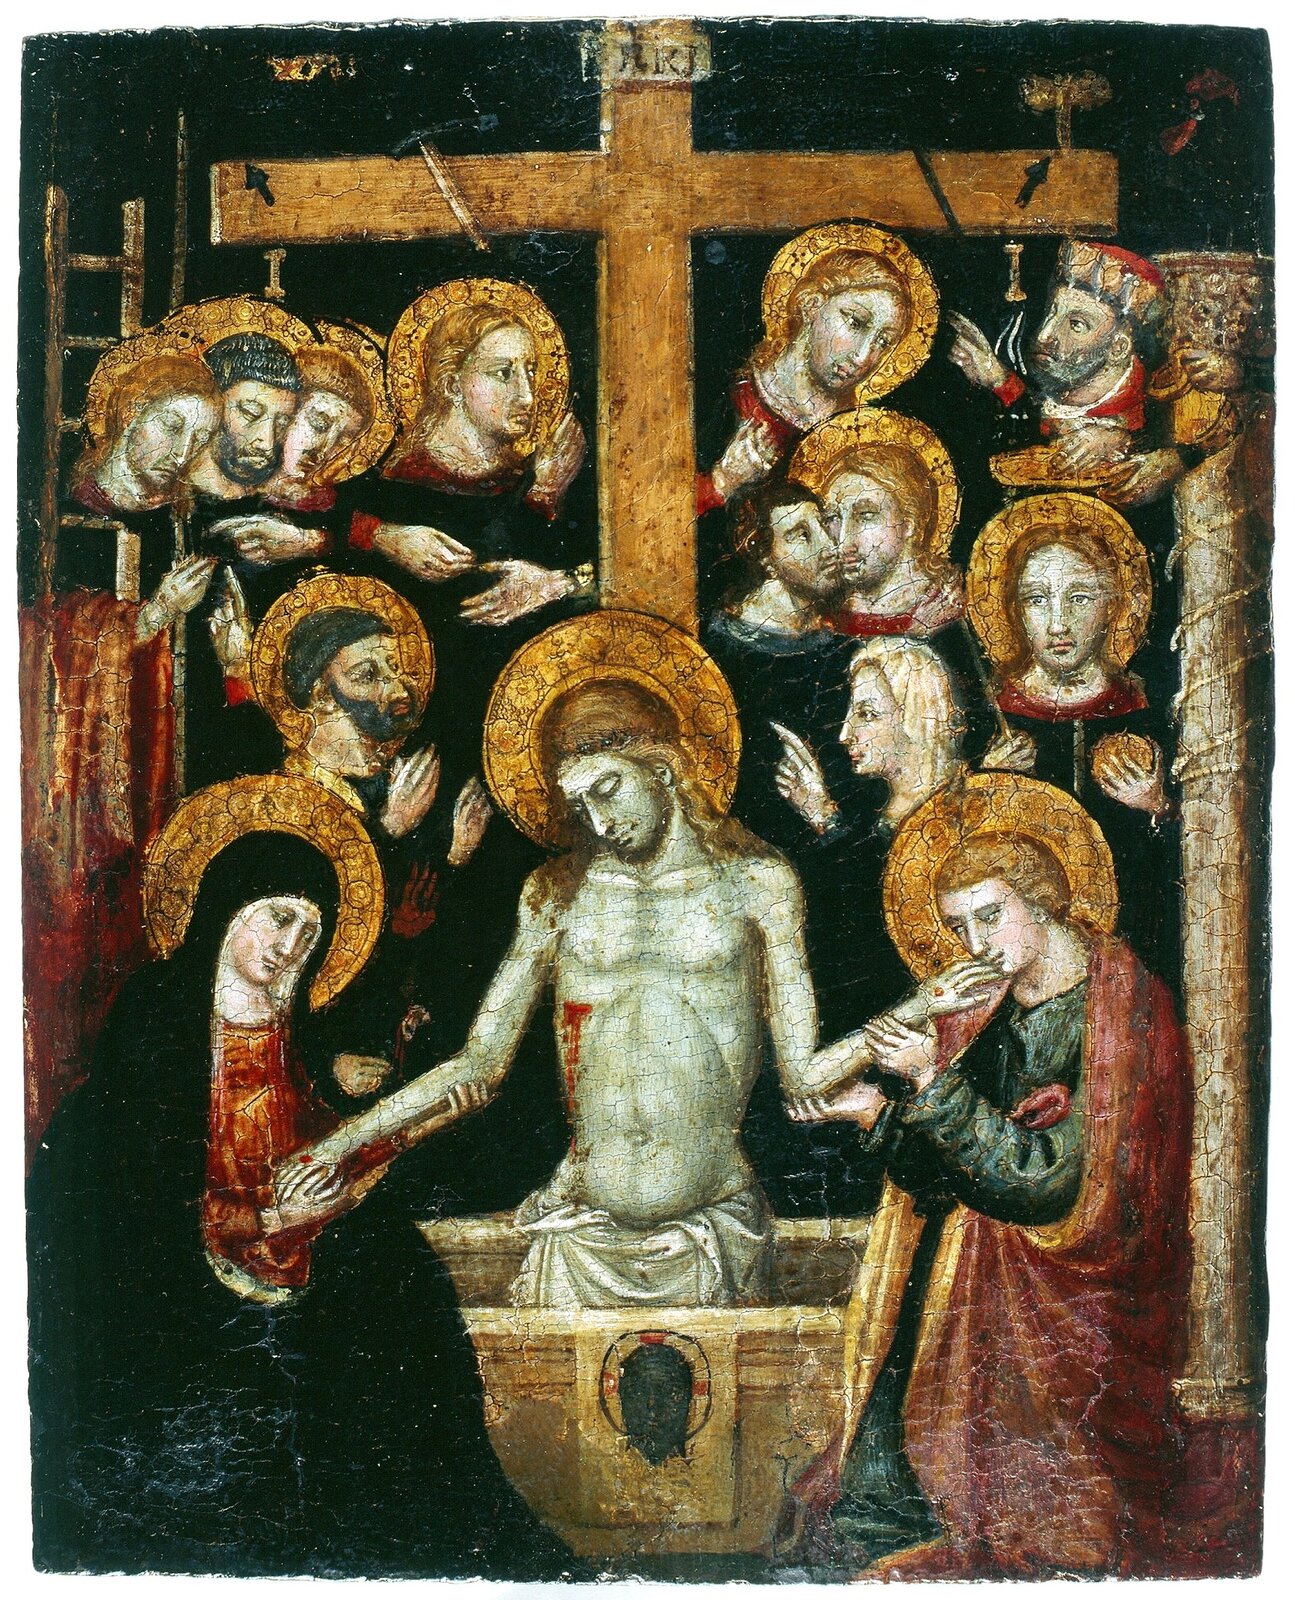 Obraz przedstawia scenę zdejmowania Jezusa Chrystusa z krzyża. Jego ciało trzymane jest za ręce przez Matkę Boską i jednego z apostołów. Ich twarze wyrażają cierpienie. Za krzyżem znajduje się duża grupa mężczyzn. Cześć z nich rozpacza, część rozmawia.